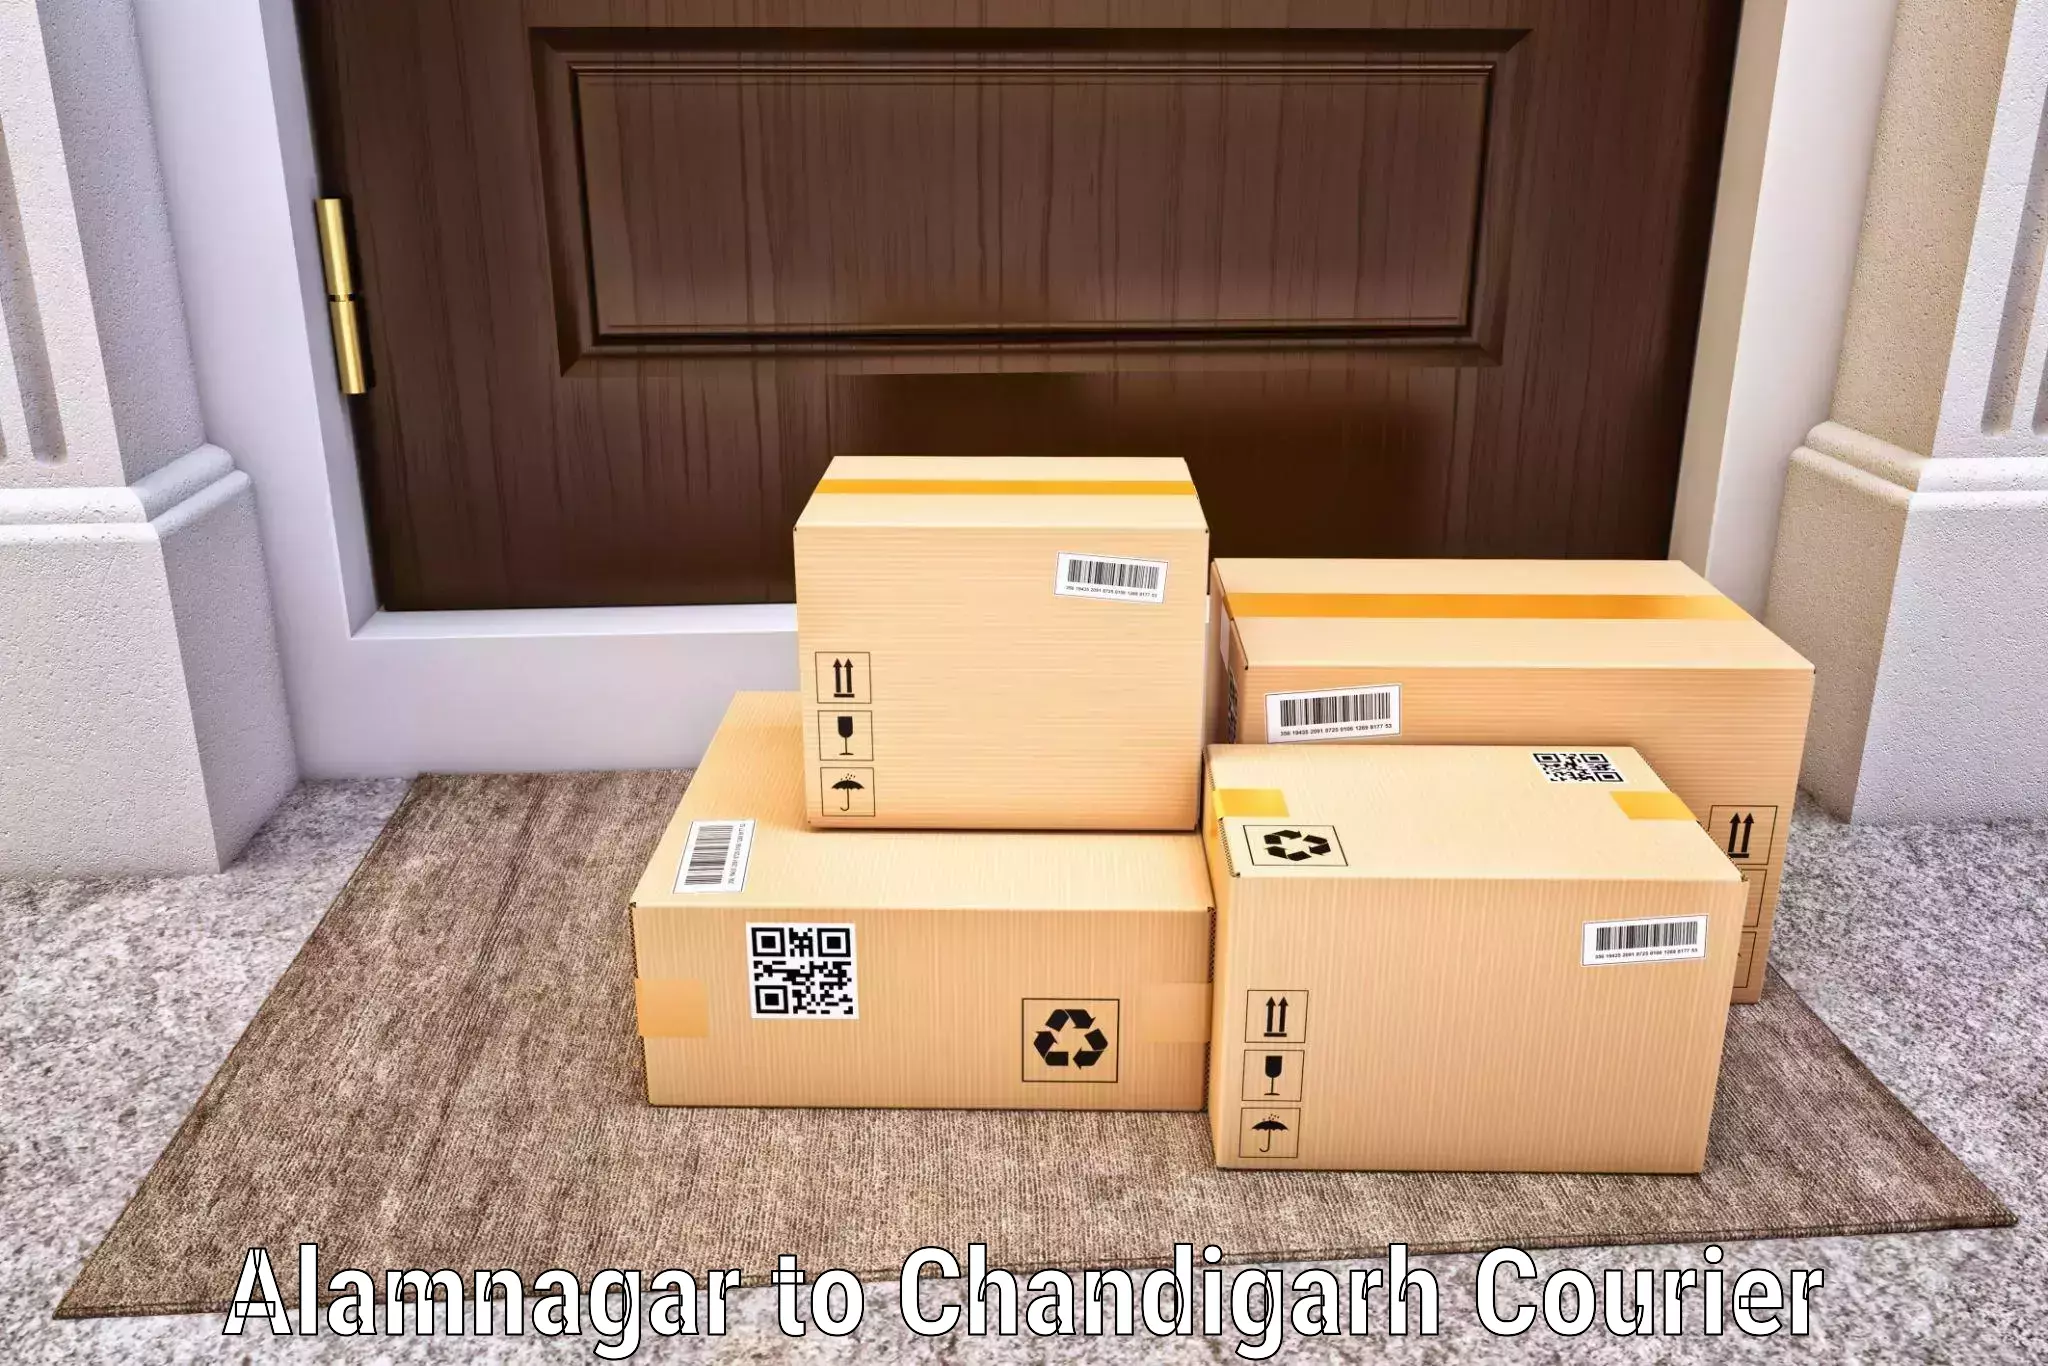 Door-to-door freight service Alamnagar to Chandigarh